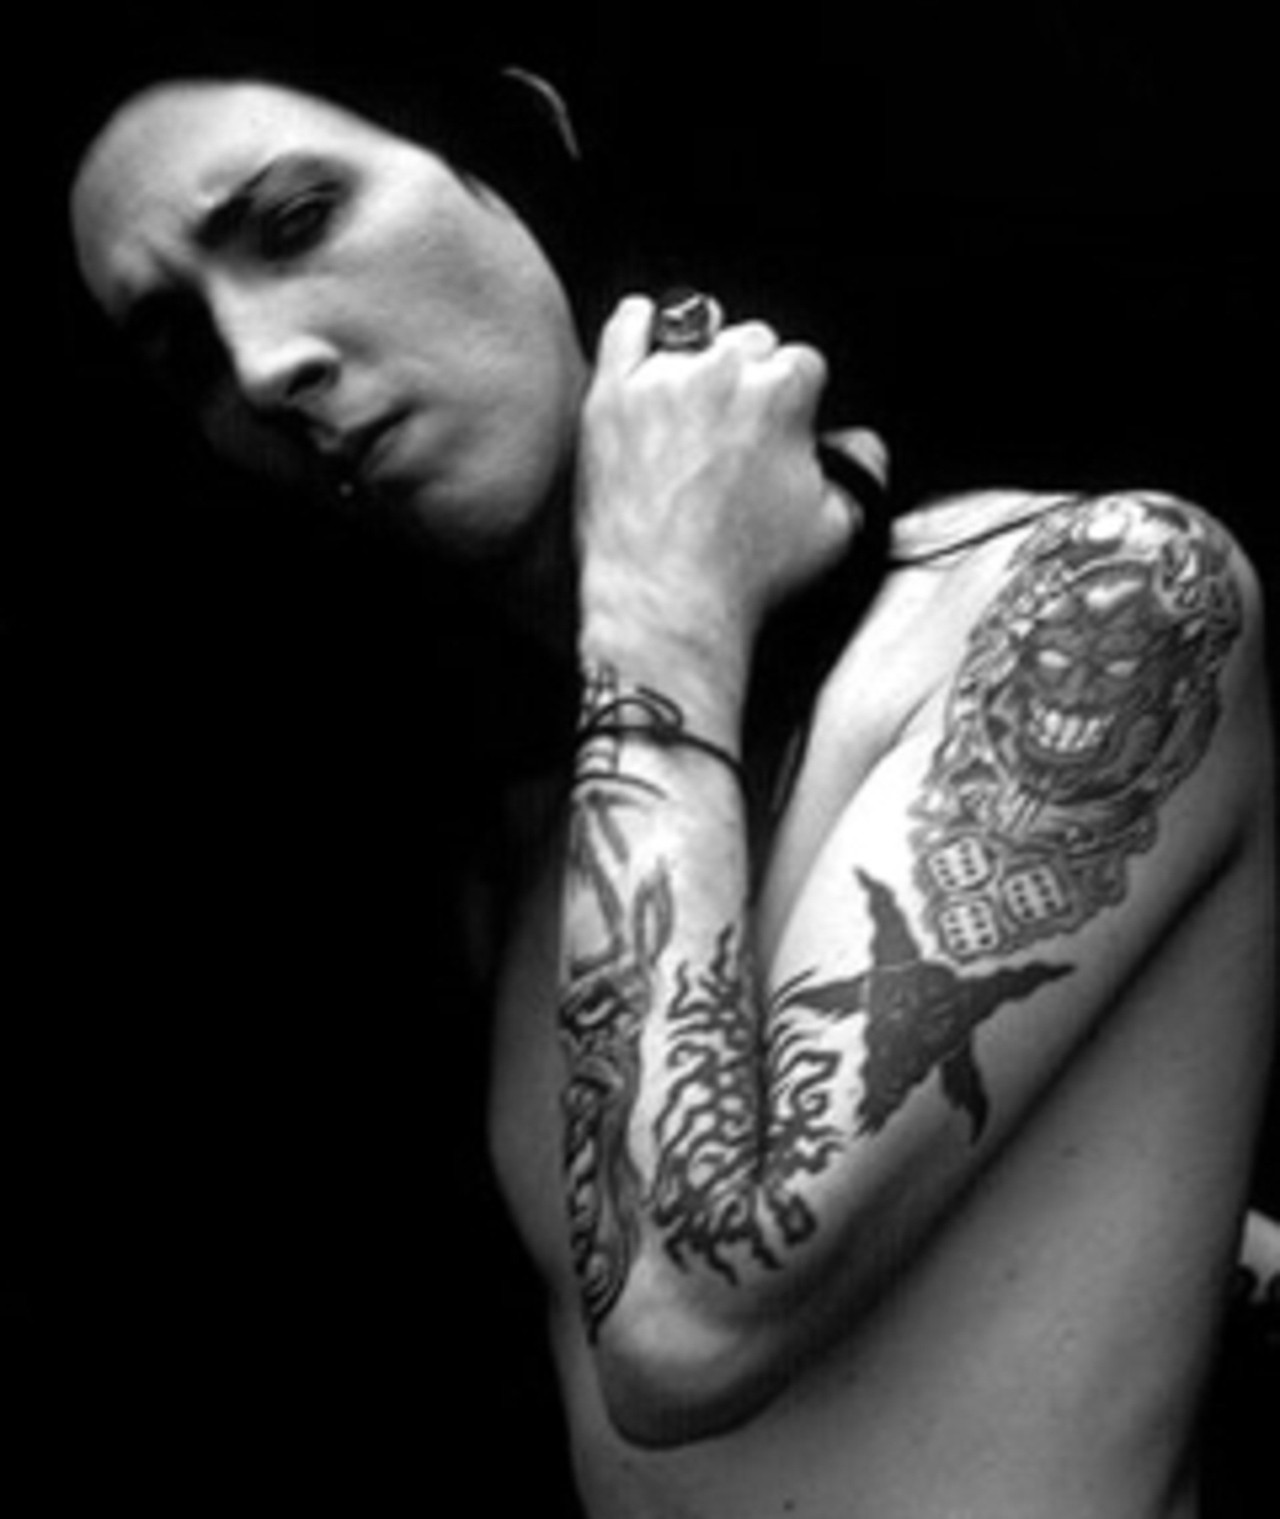 Foto von Marilyn Manson